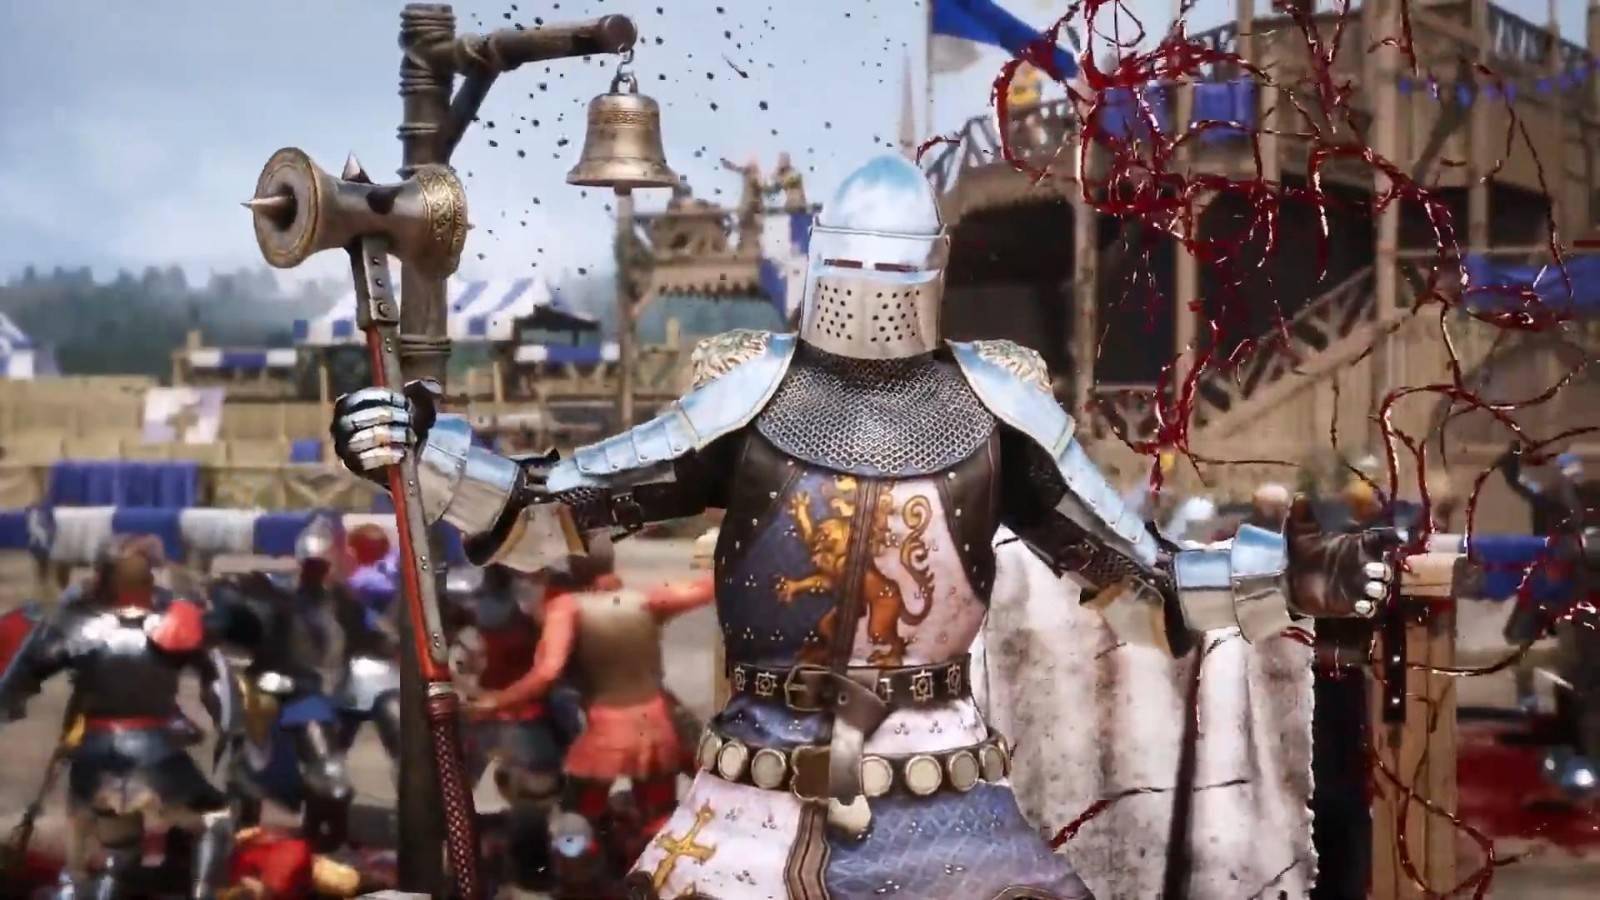 中世纪砍杀游戏《骑士精神2》新预告 战斗系统介绍